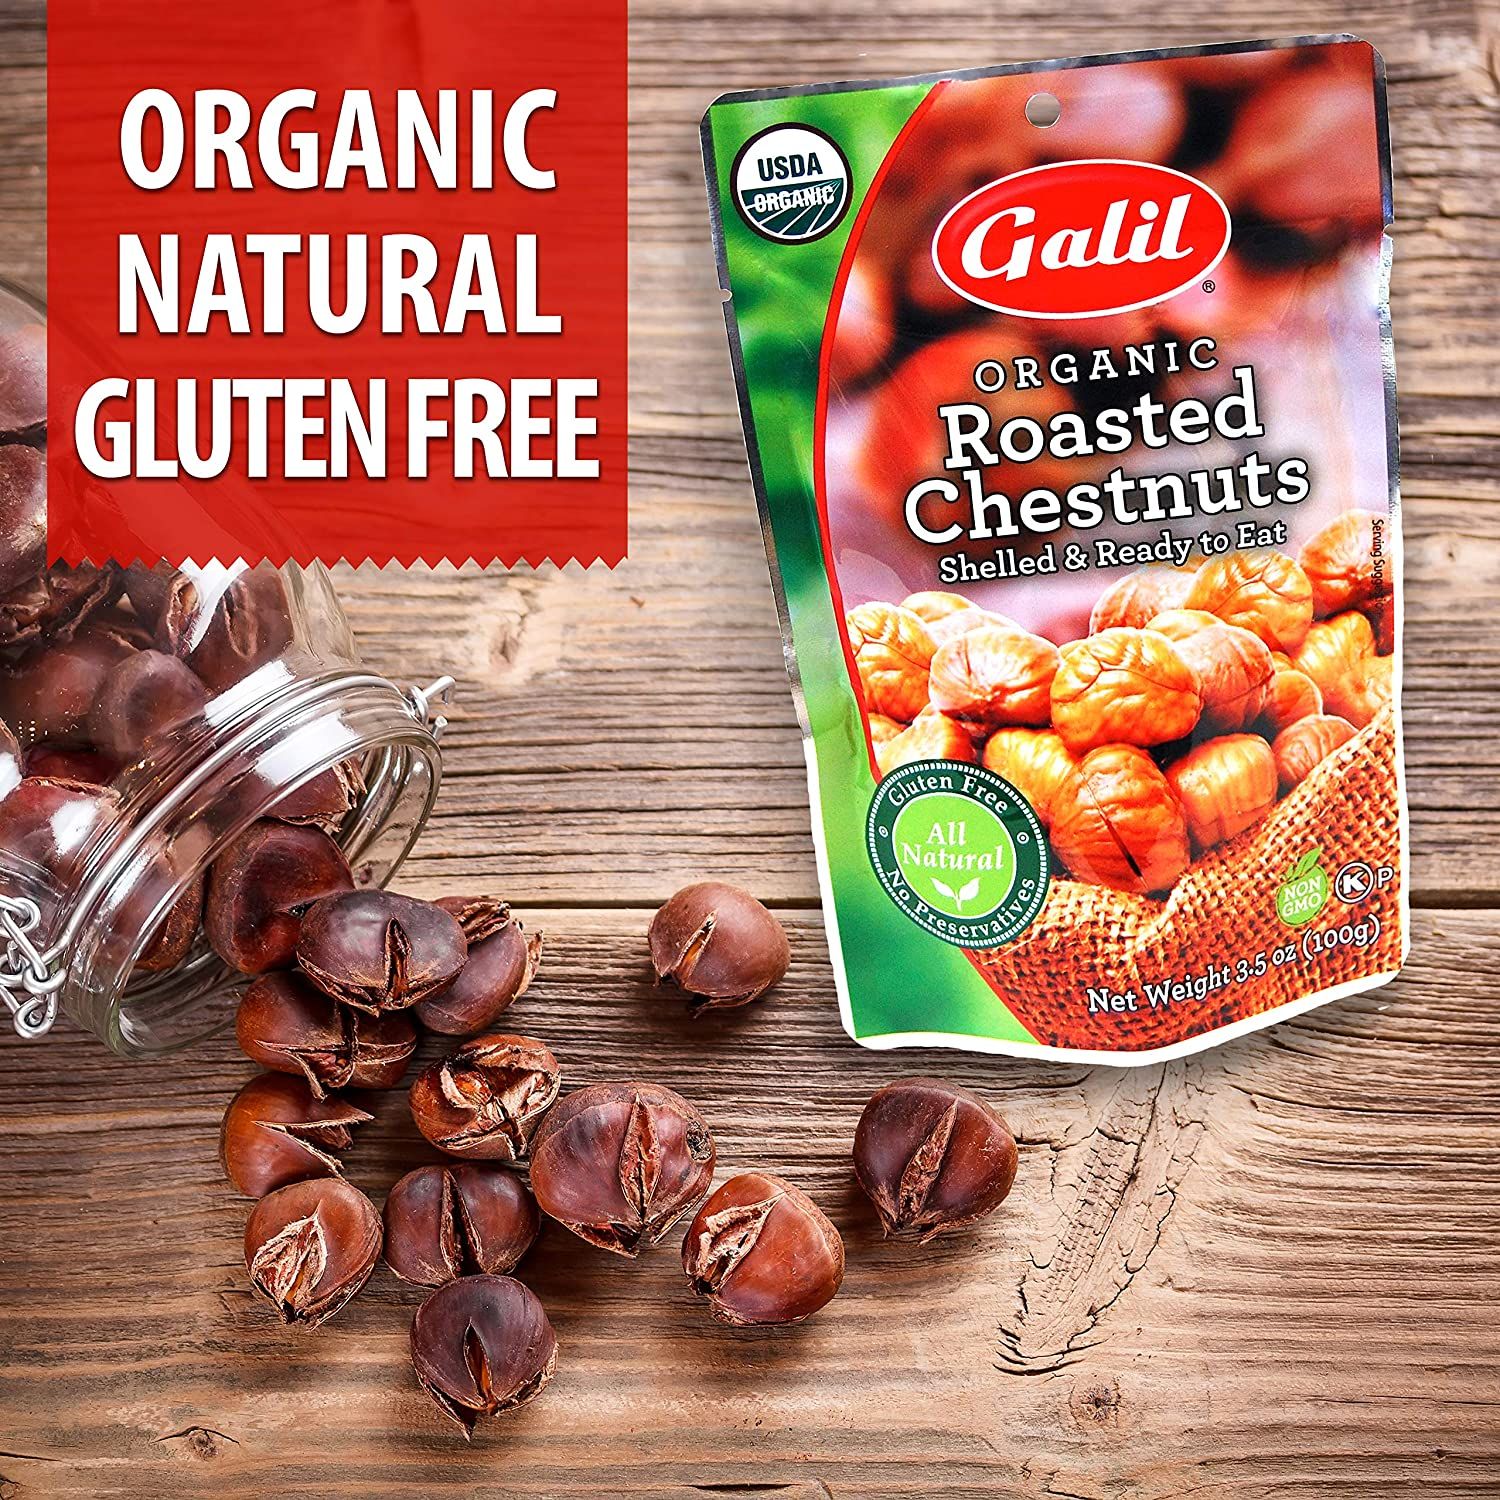  Hạt Dẻ Luộc Galil organic roasted chestnuts 6 pack [Hộp 06 túi, 100g/túi] 